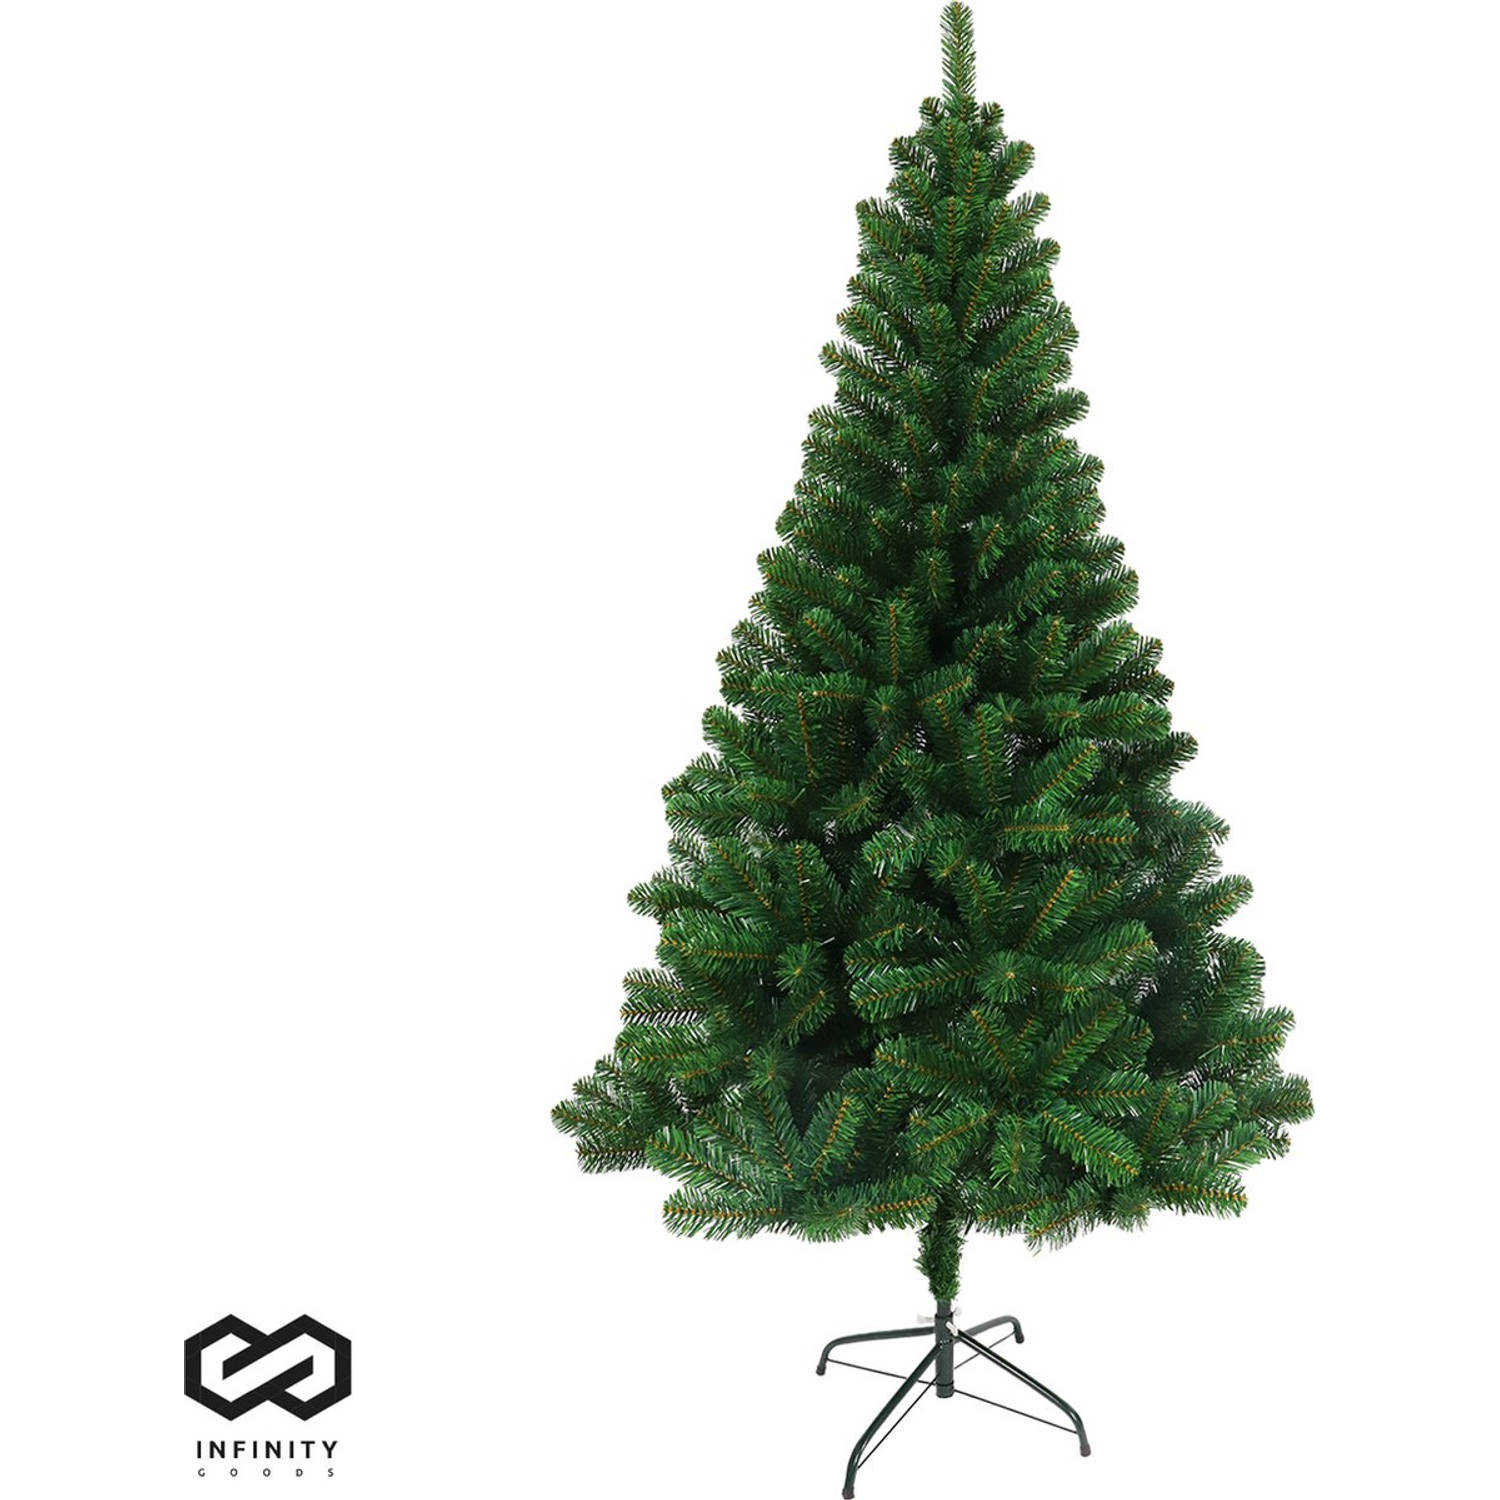 Infinity Goods Kunstkerstboom - 210 cm - Realistische Kunststof Kerstboom - Metalen Standaard - Zonder Verlichting - Groen